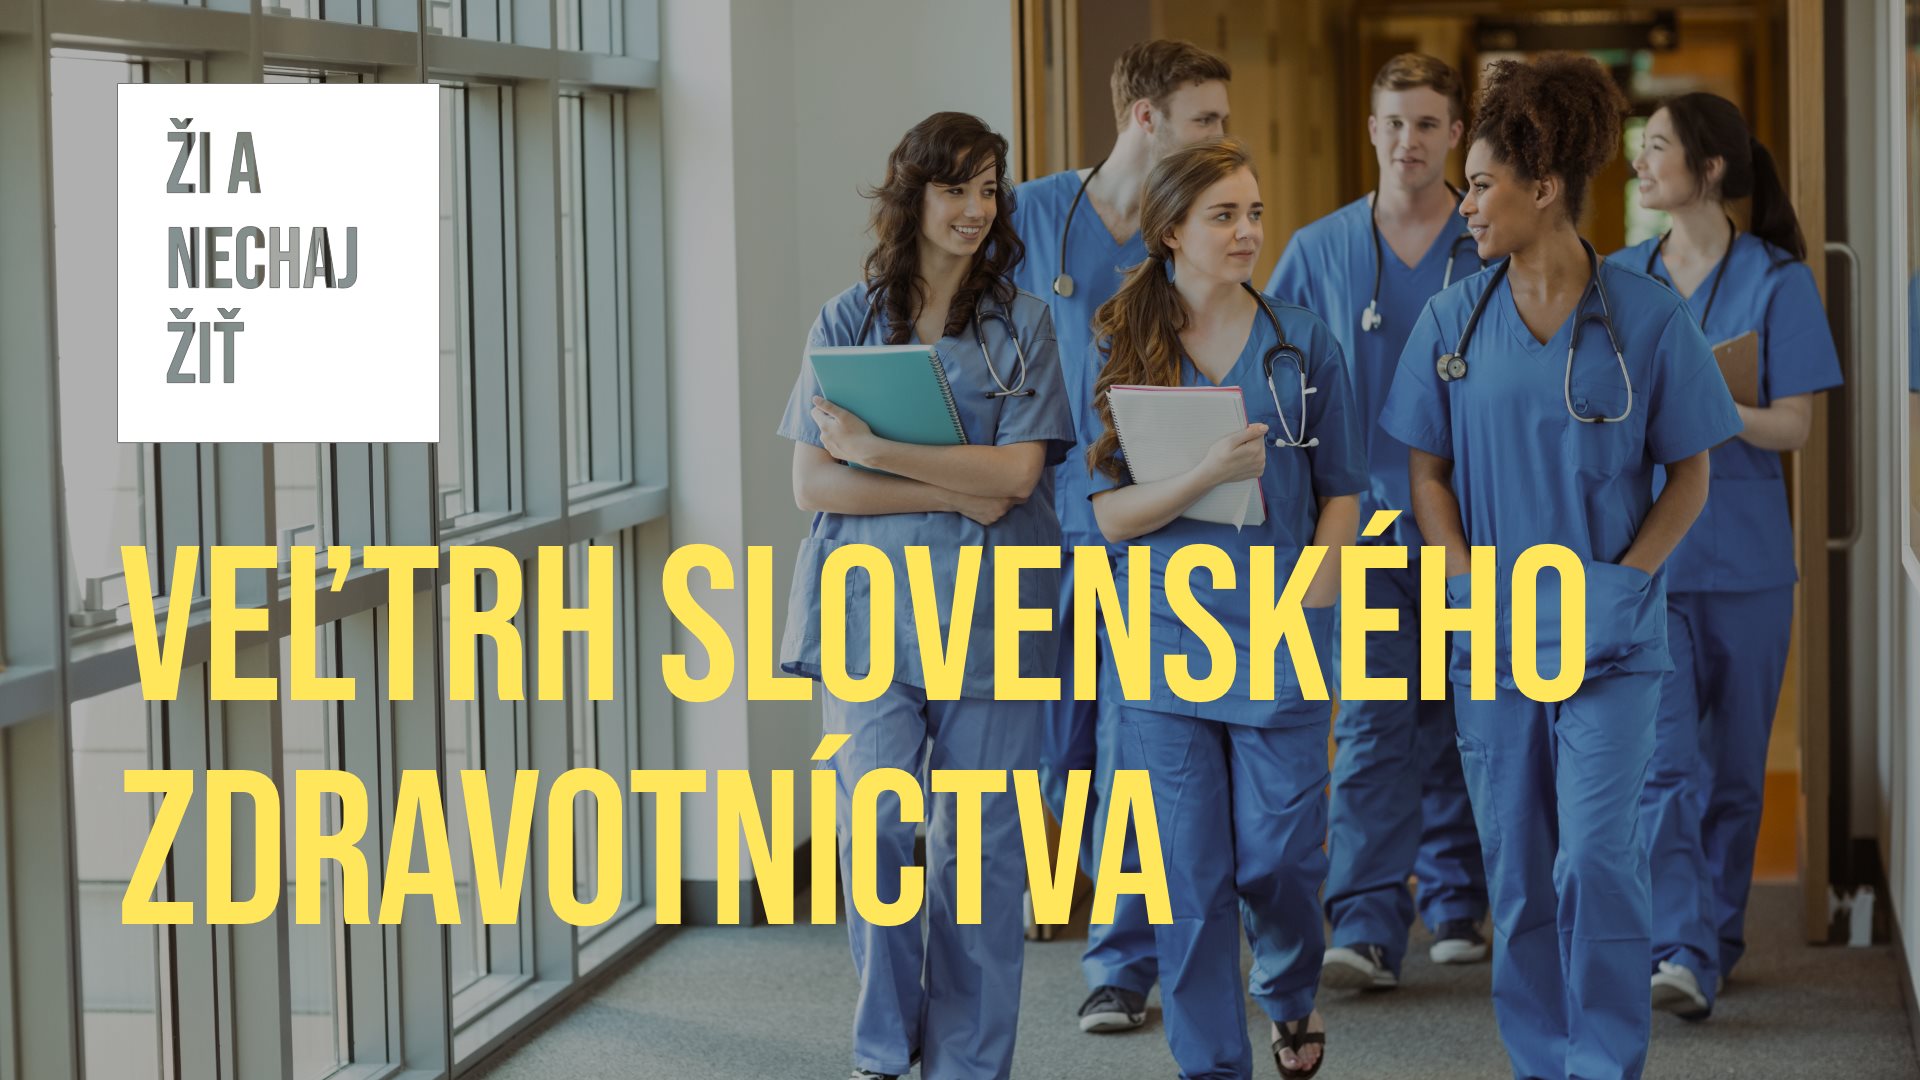 Veľtrh slovenského zdravotníctva